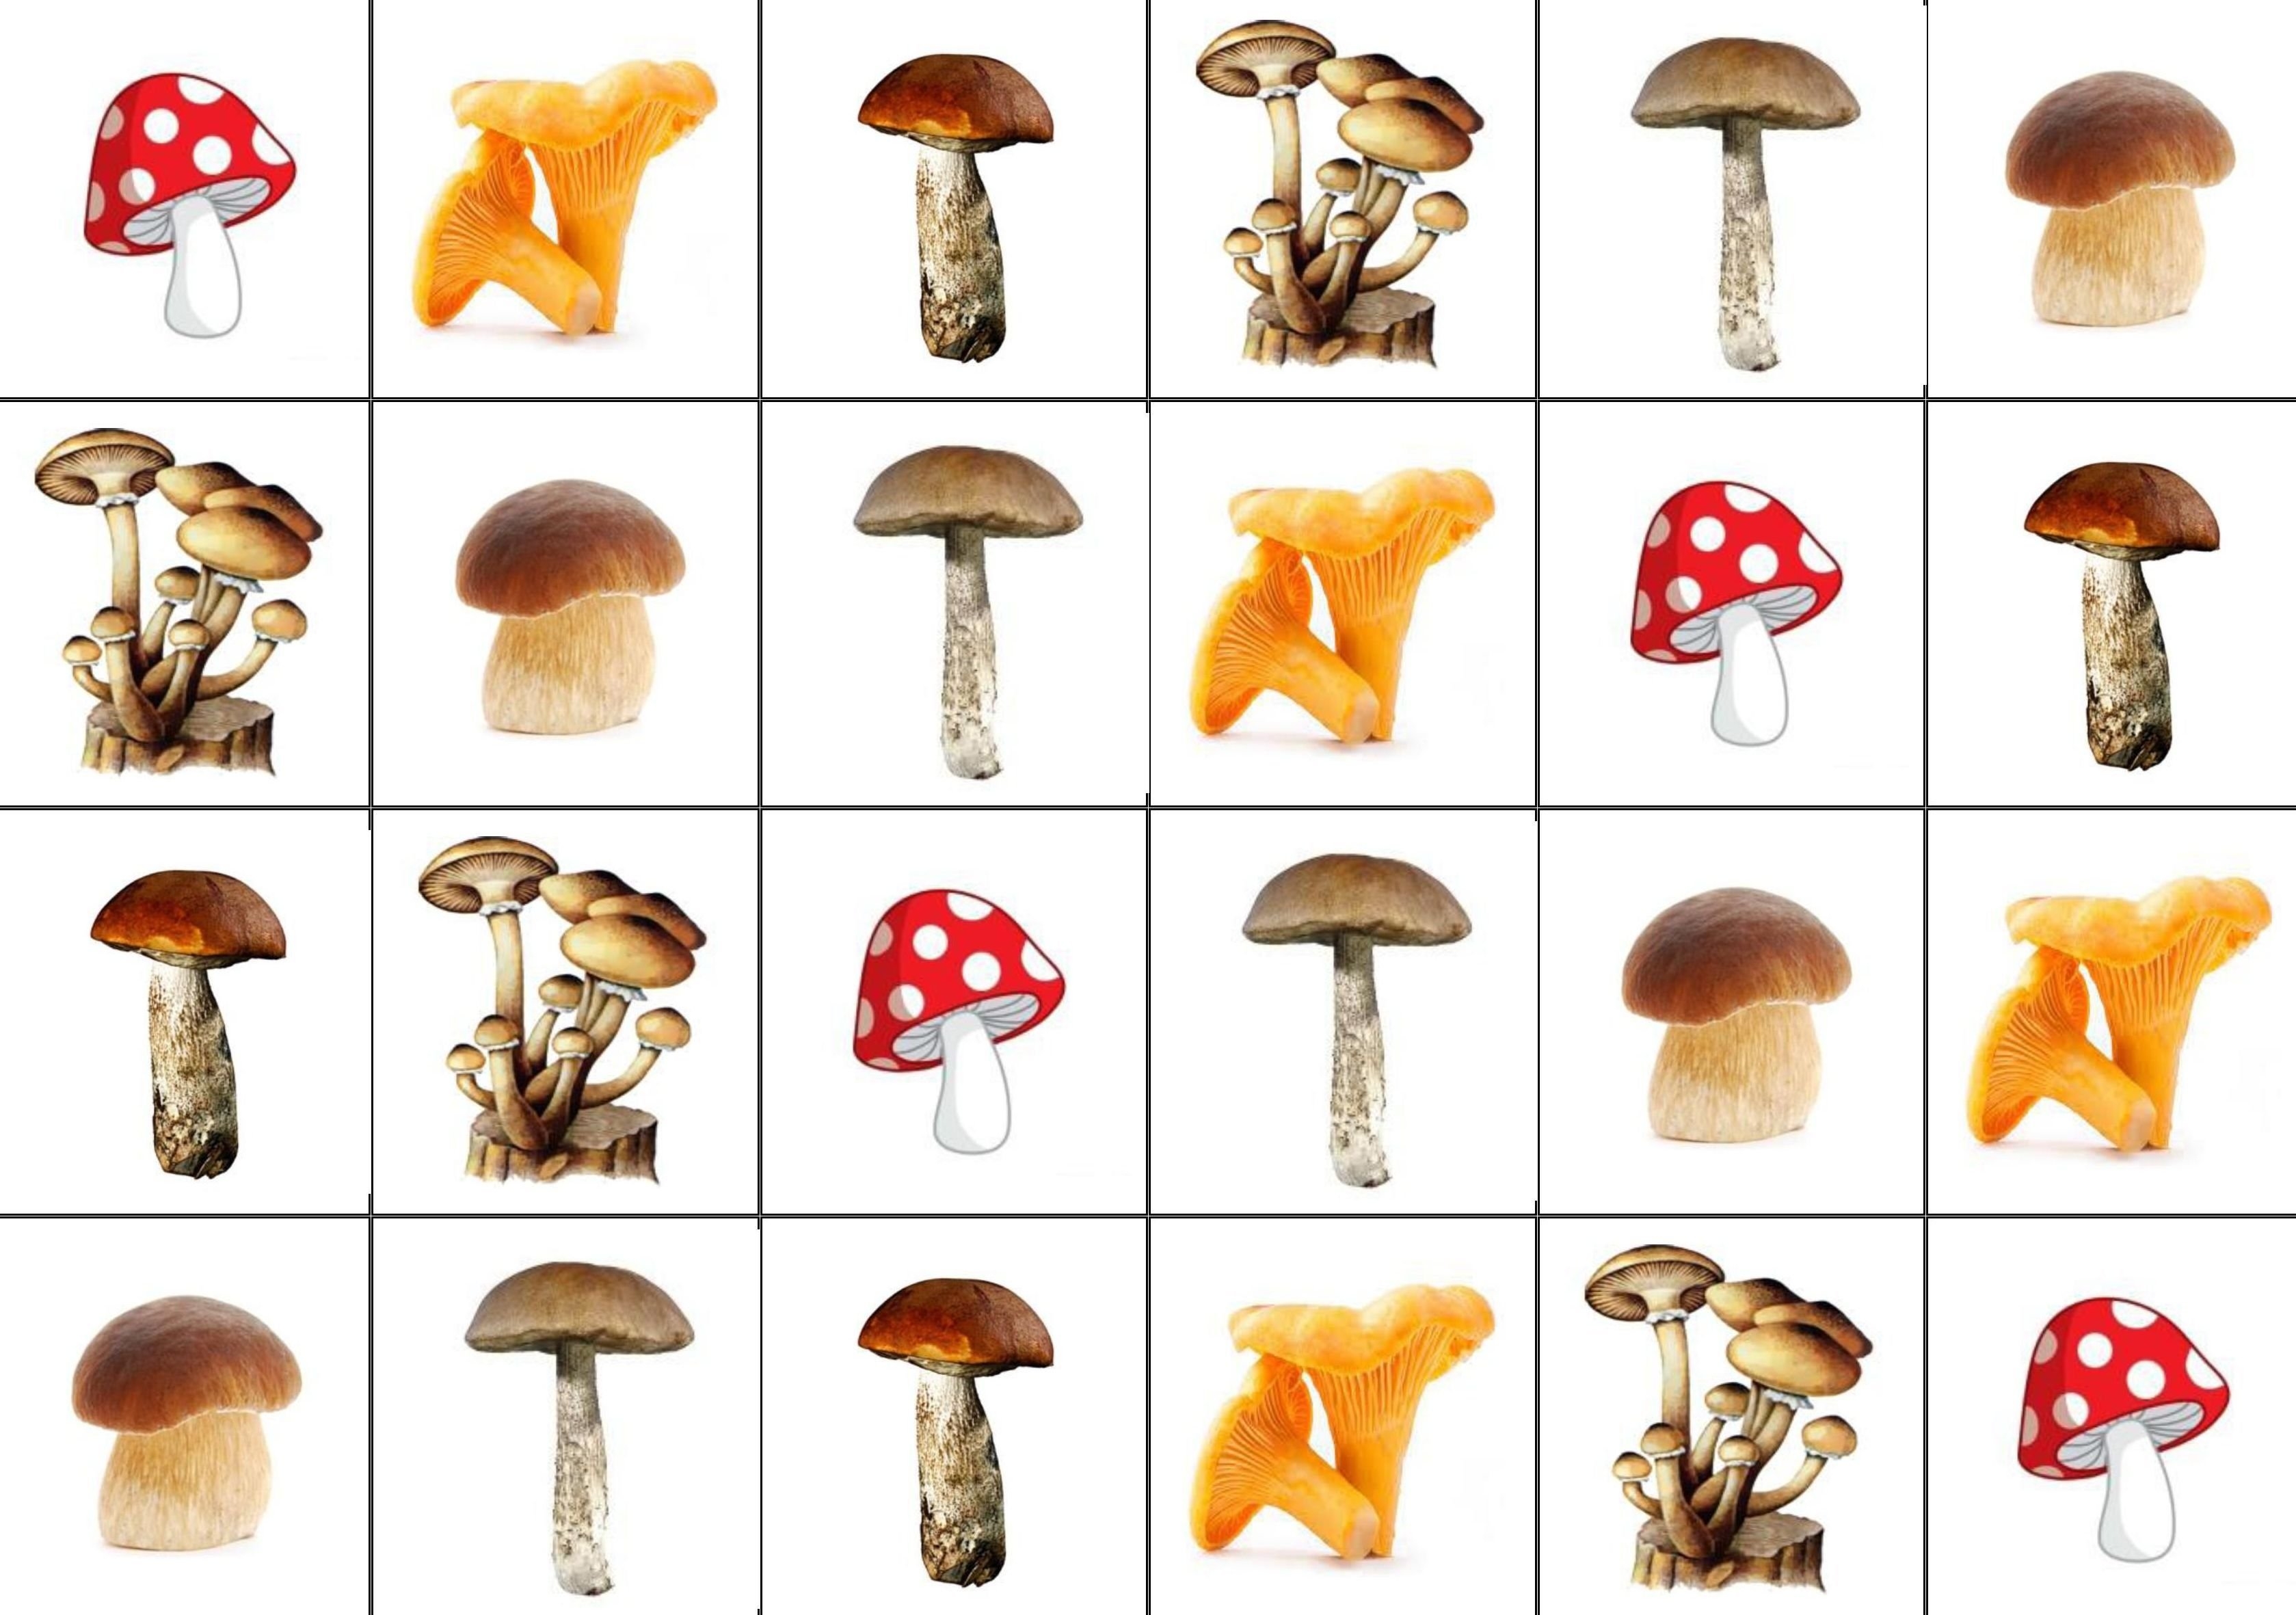 Рисунки съедобных грибов - 65 фото